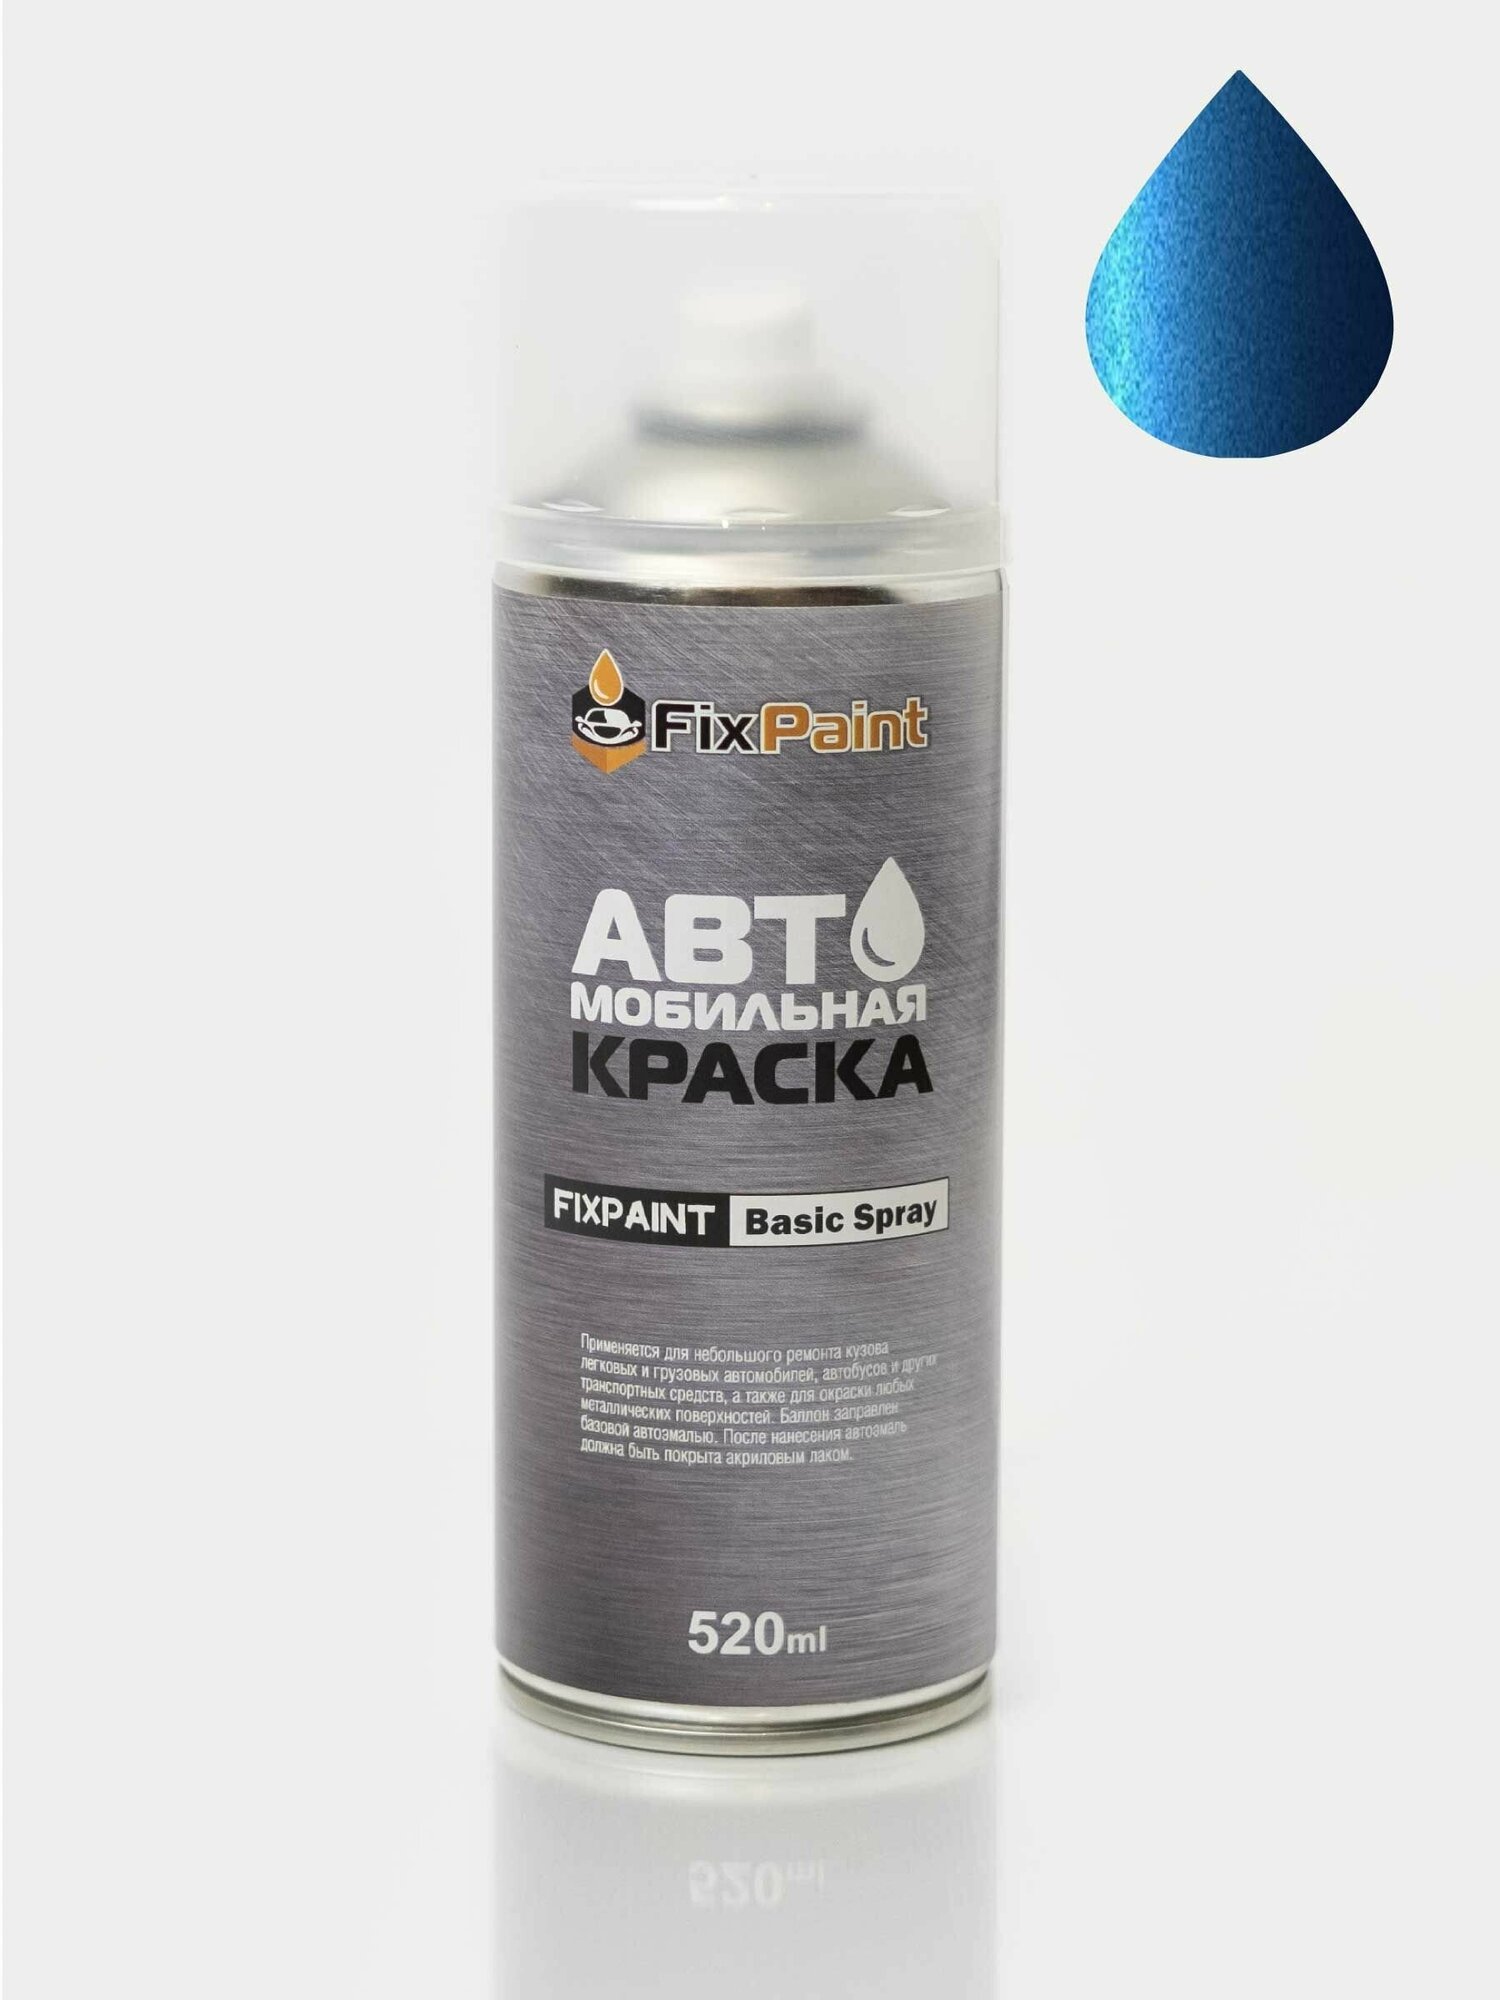 Автомобильная краска FixPaint Spray MERCEDES-BENZ SLS AMG(C197), код цвета 39, название DESIGNO MAURITIUS BLUE, в аэрозольном баллончике 520 мл